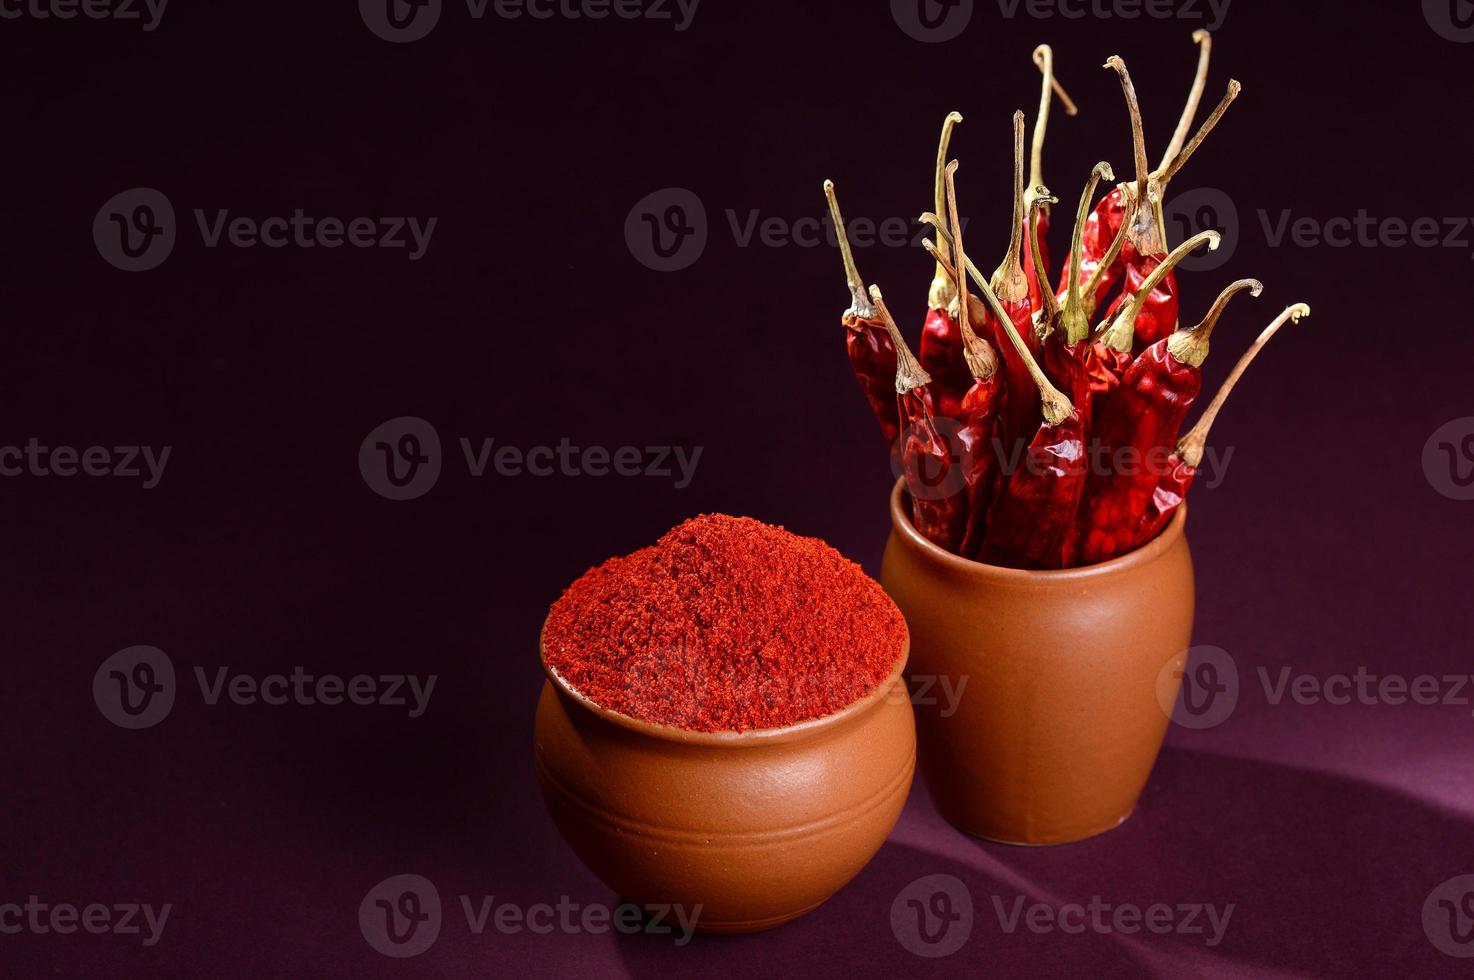 polvere fredda con peperoncino rosso in vasi di argilla, peperoncini secchi su sfondo scuro foto